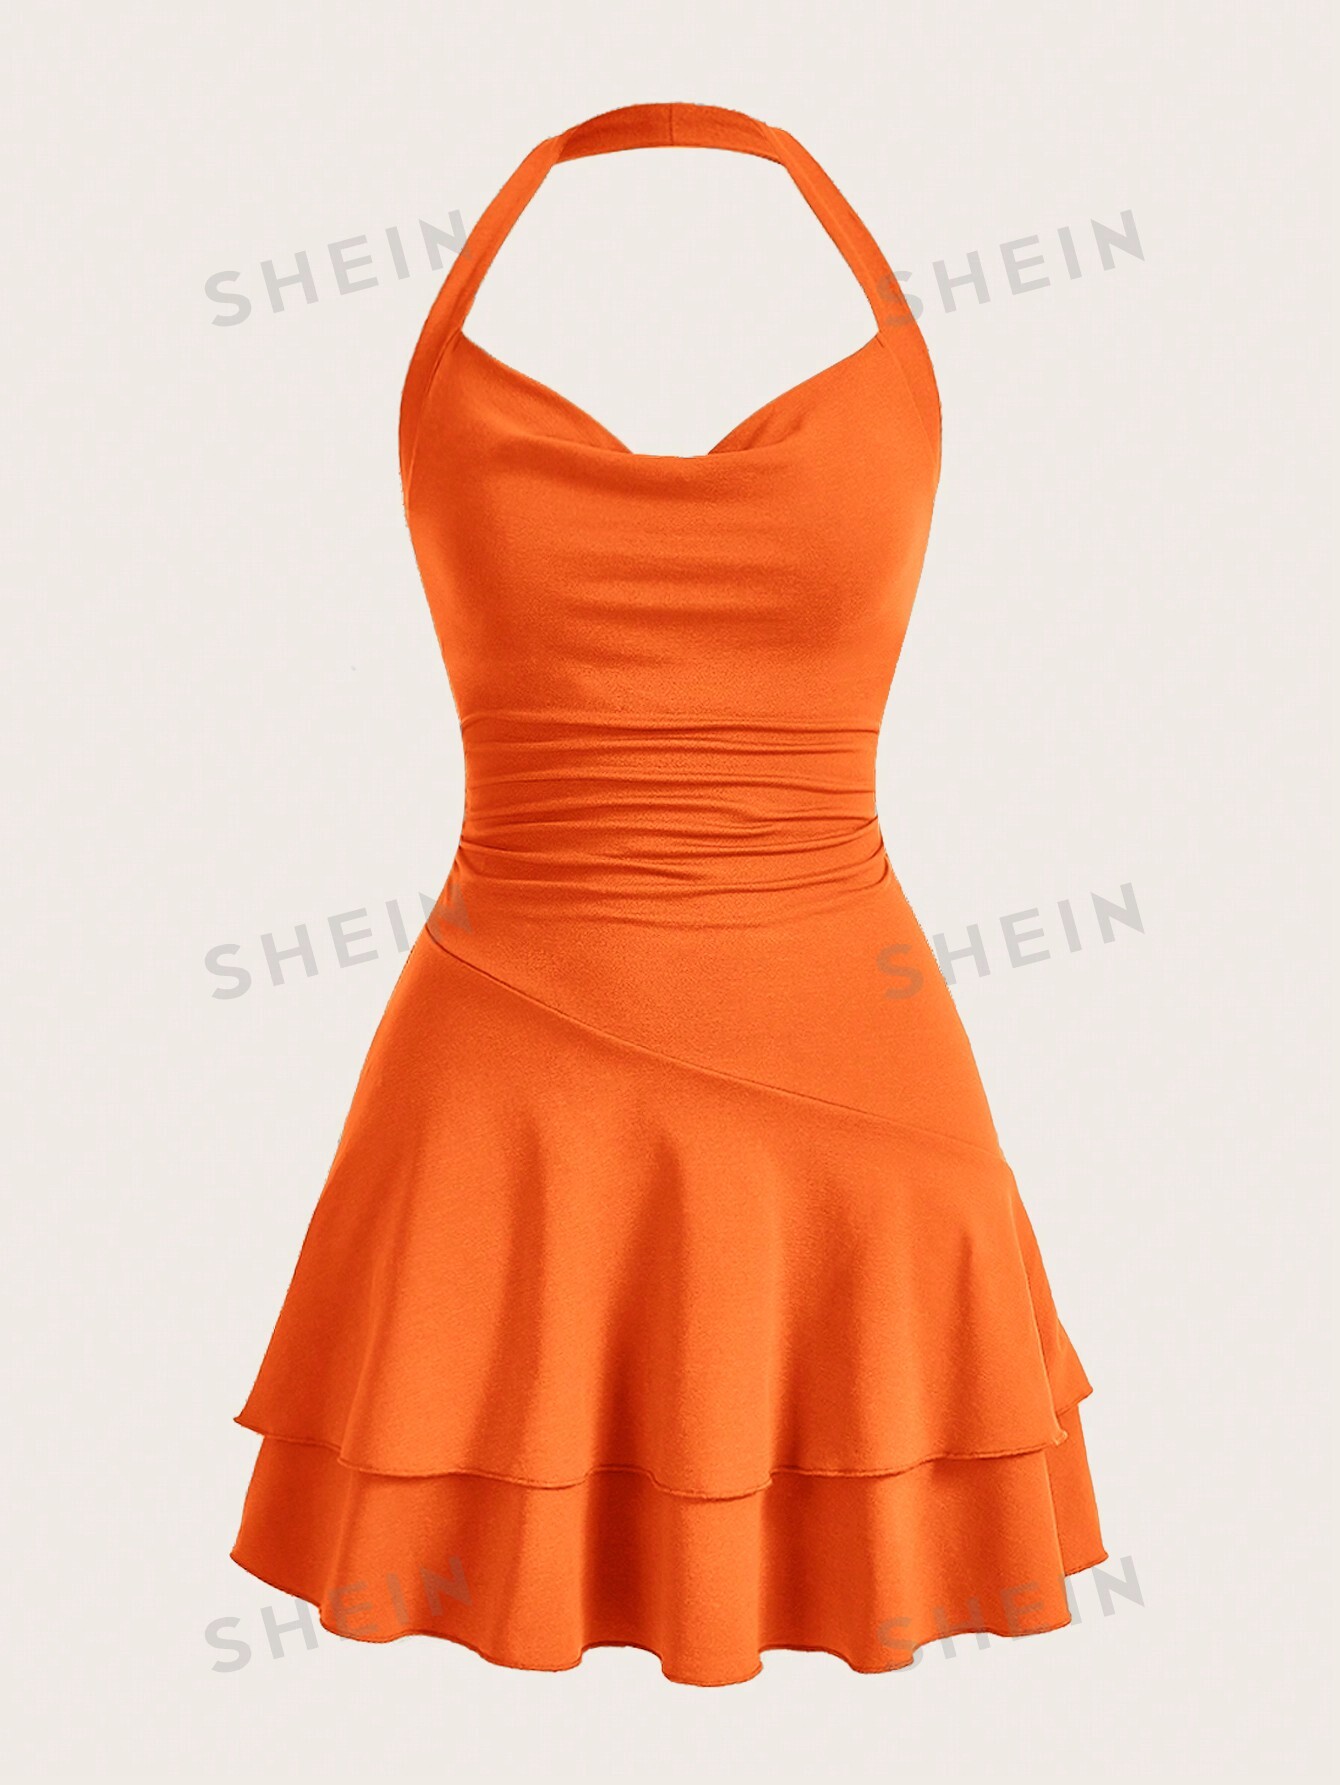 SHEIN MOD однотонное женское платье с бретелькой на шее и многослойным подолом, апельсин